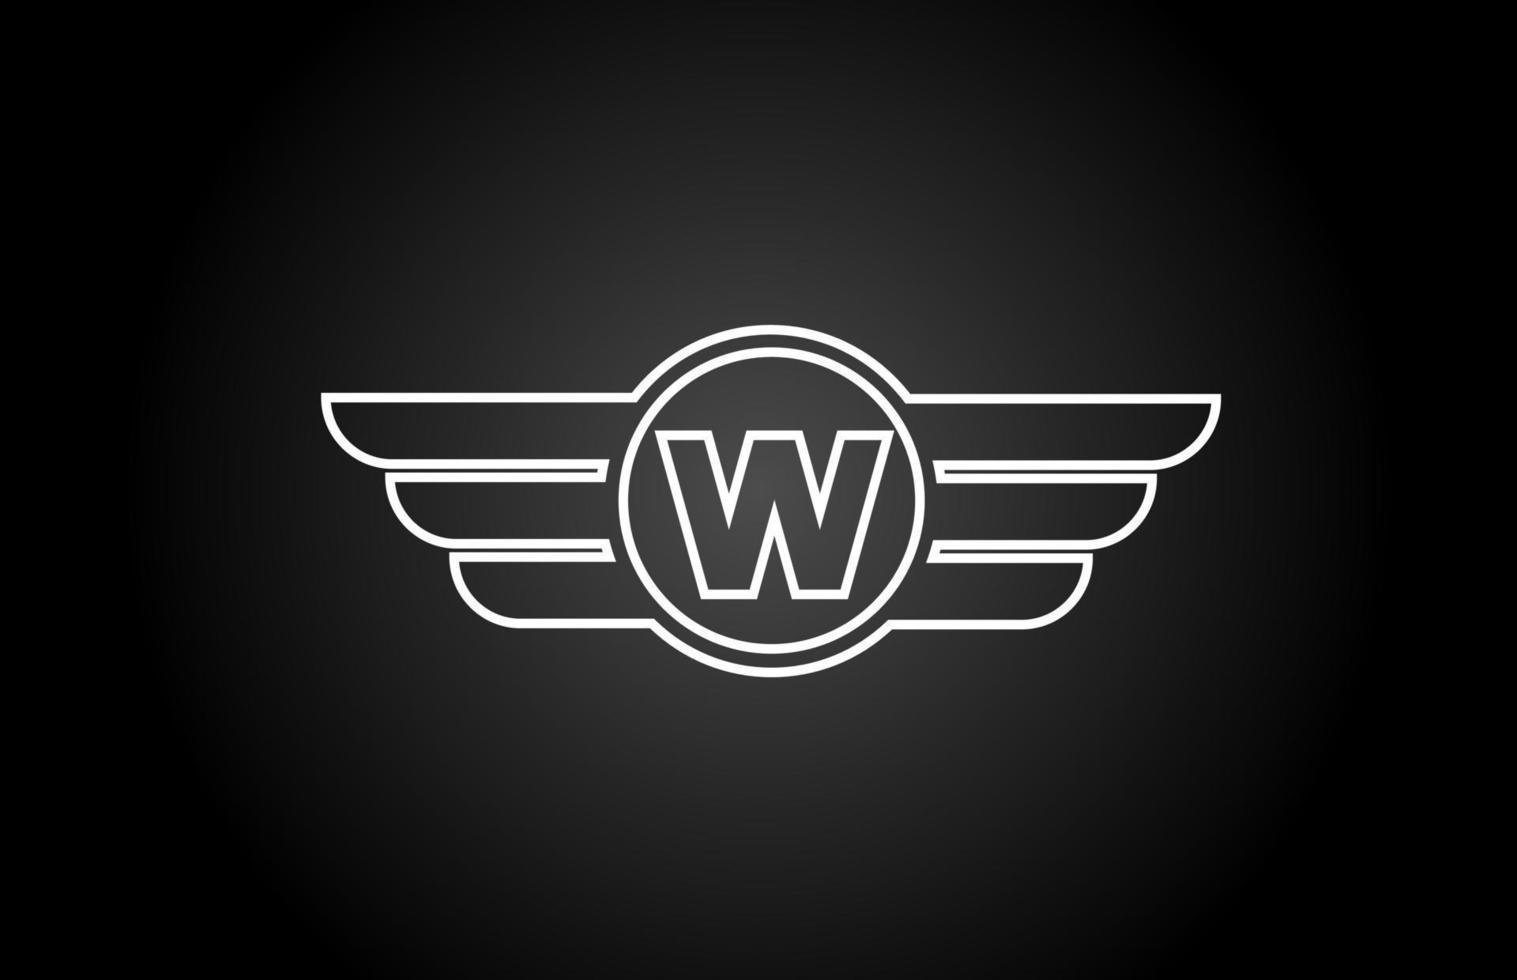 W icono del logotipo de la letra del alfabeto para empresas y empresas con diseño de ala de línea en blanco y negro vector